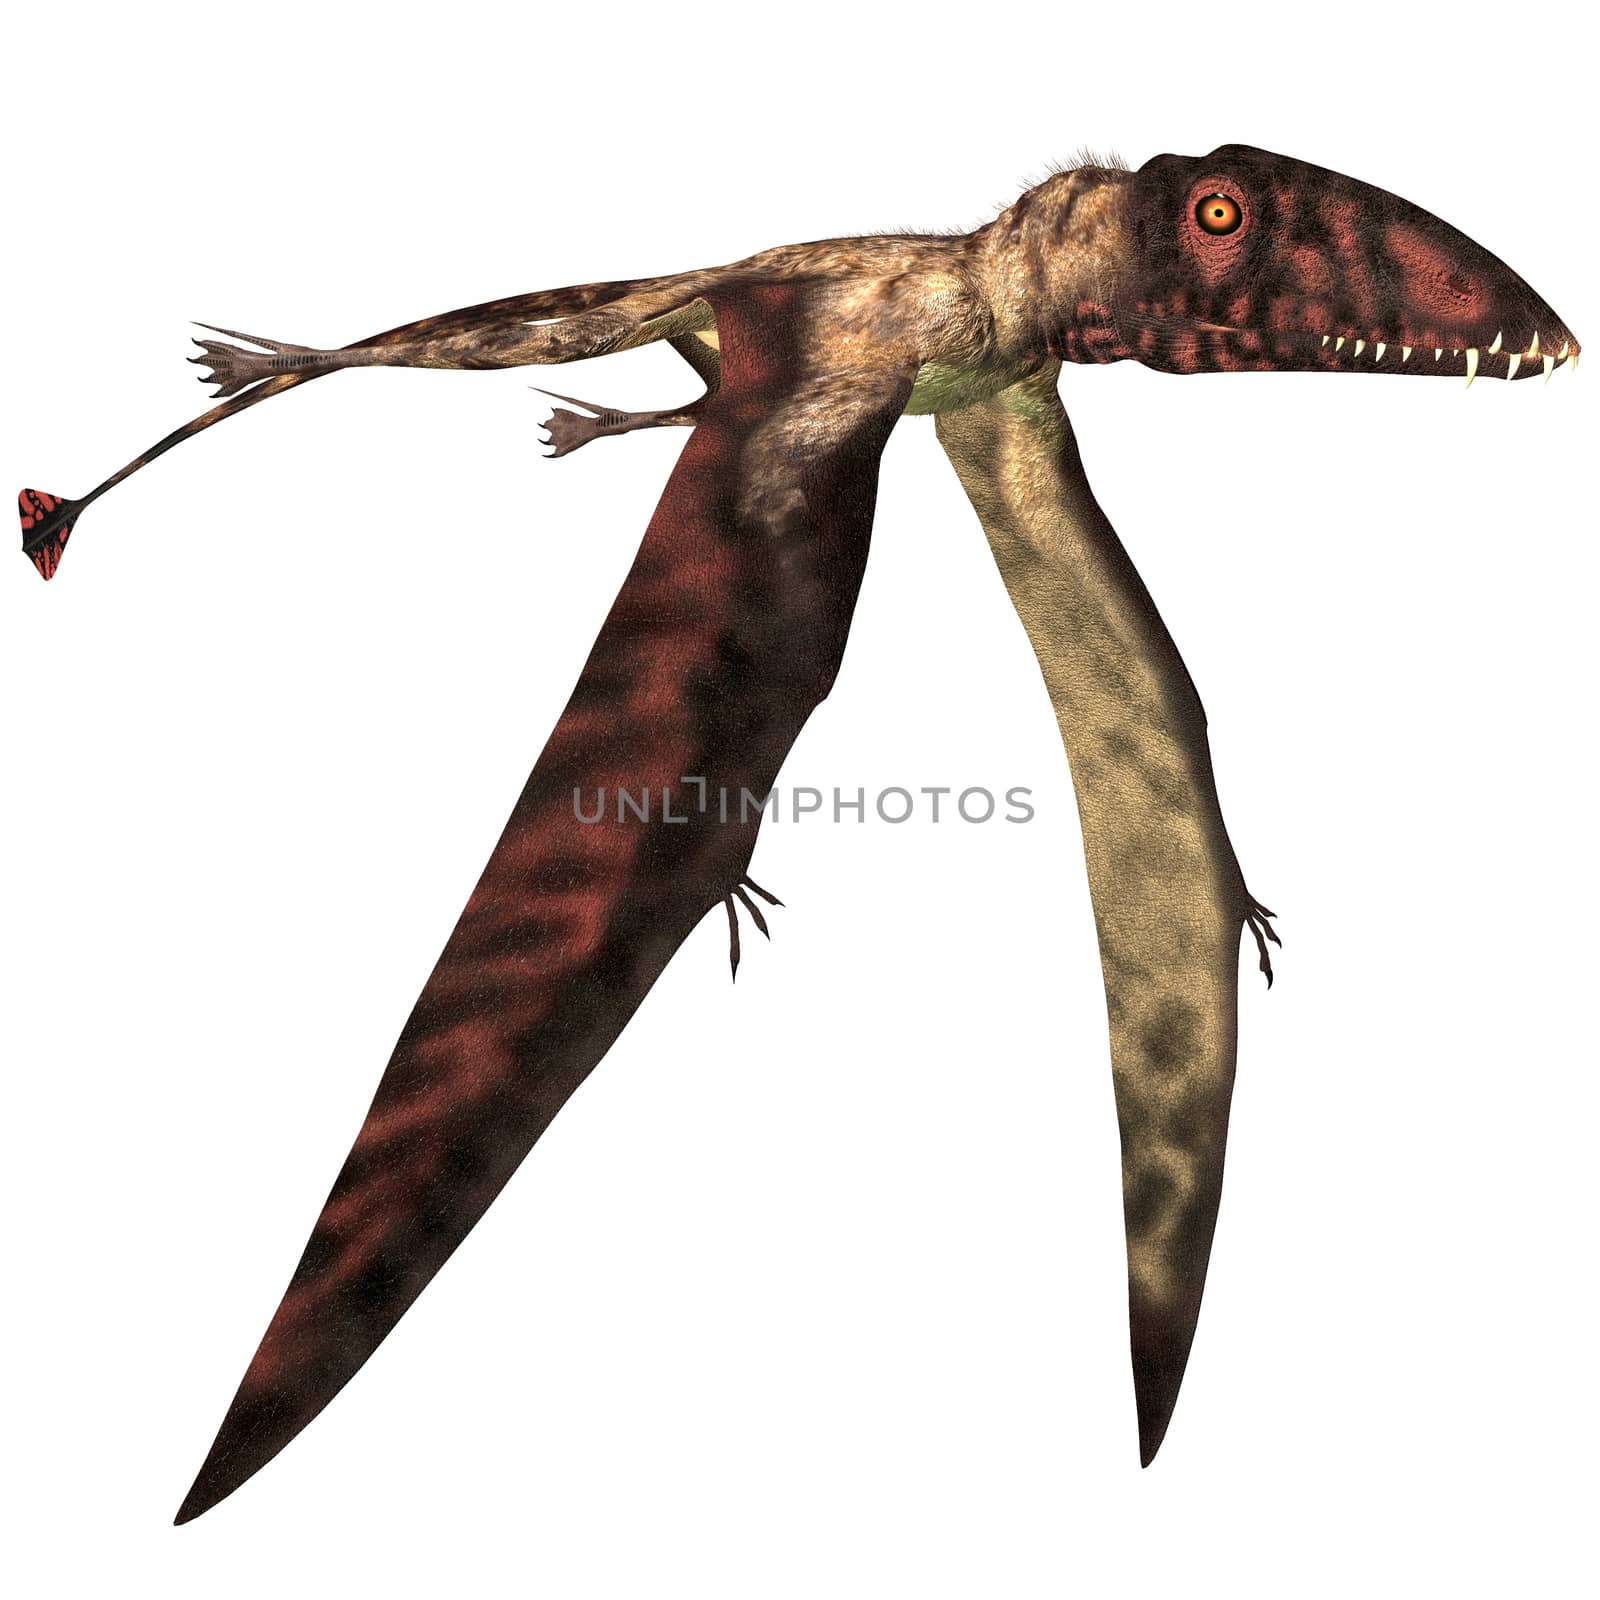 Dimorphodon in Flight by Catmando